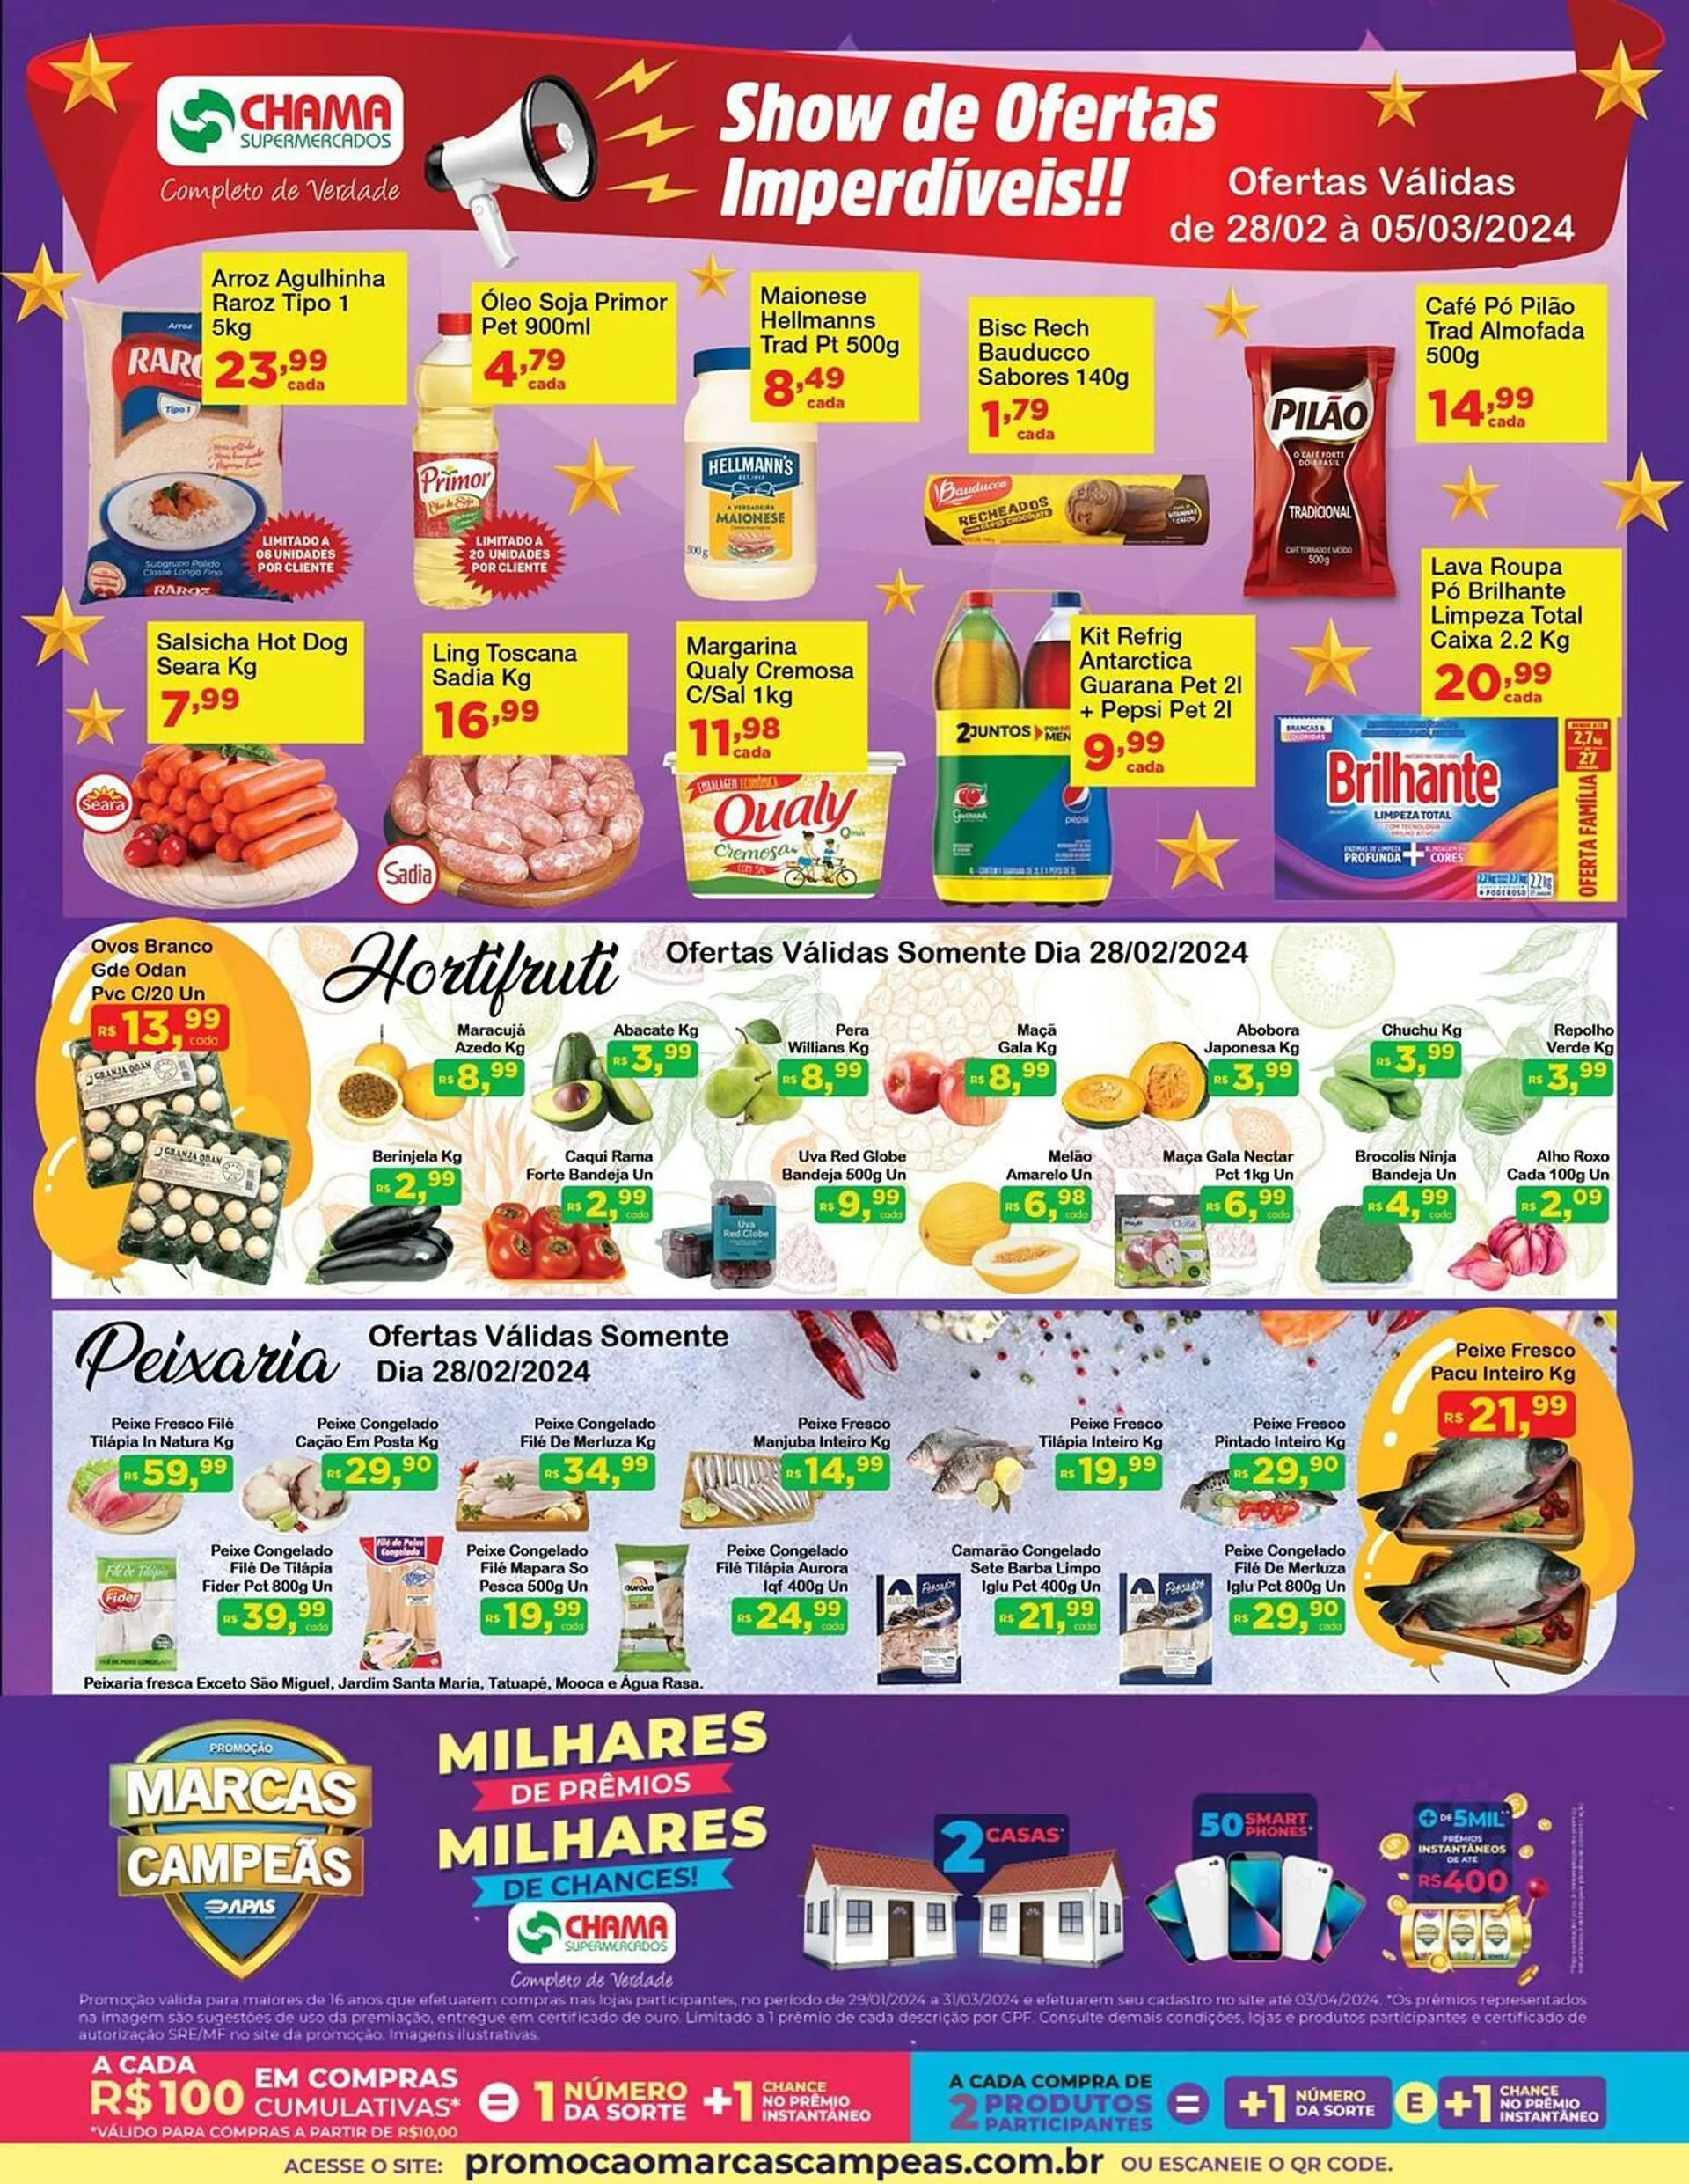 Encarte de Catálogo Chama Supermercados 28 de fevereiro até 5 de março 2024 - Pagina 